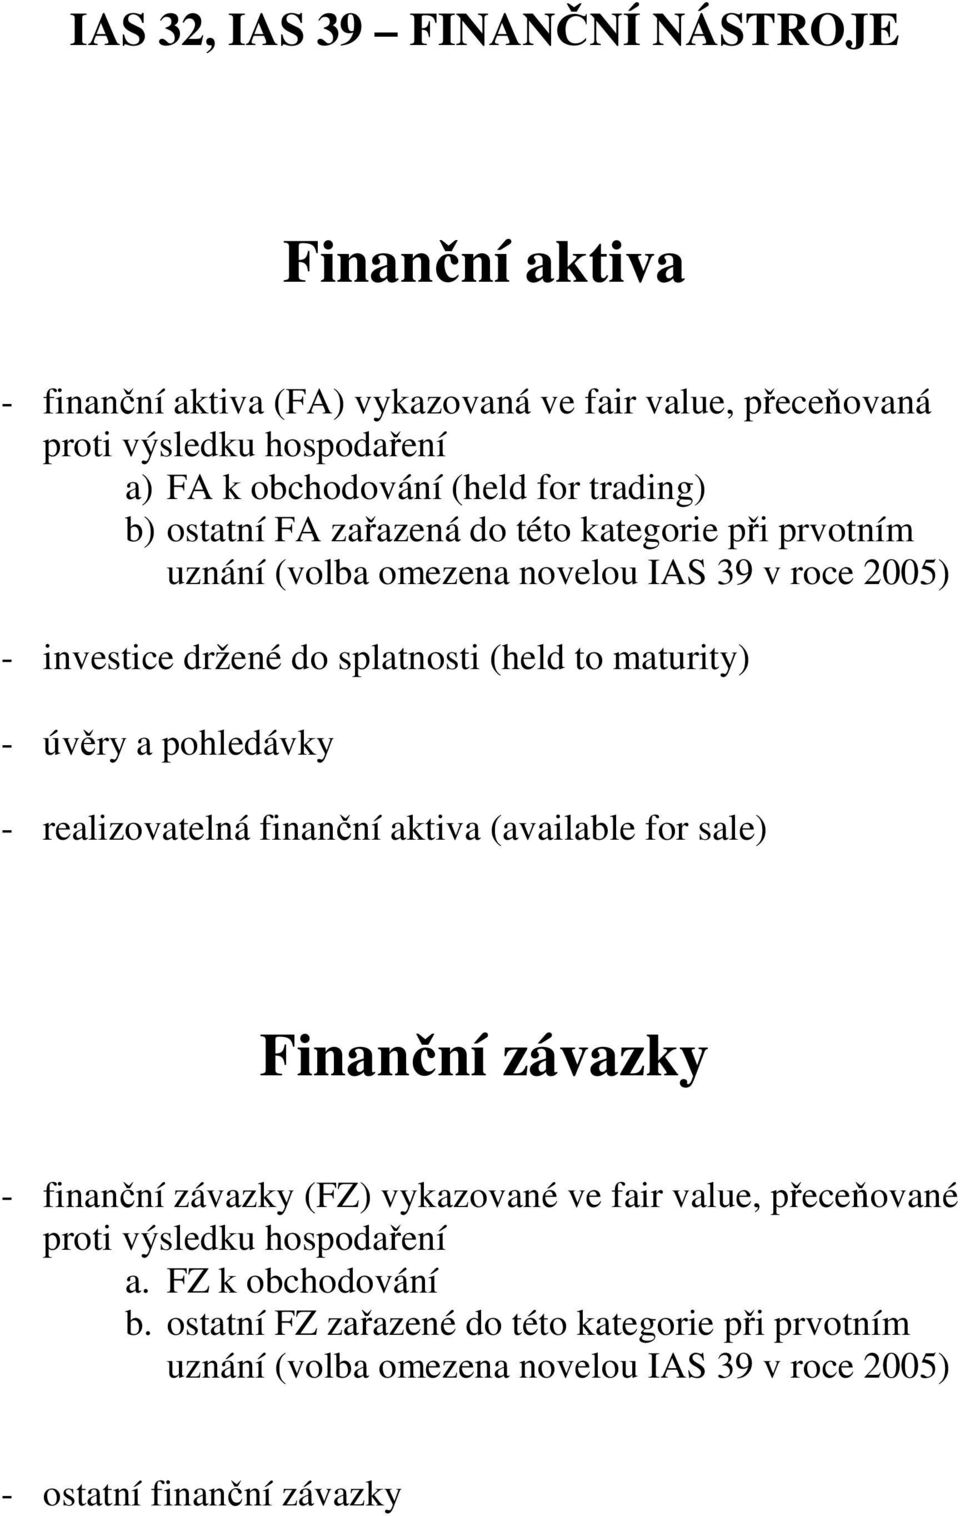 maturity) - úvěry a pohledávky - realizovatelná finanční aktiva (available for sale) Finanční závazky - finanční závazky (FZ) vykazované ve fair value, přeceňované